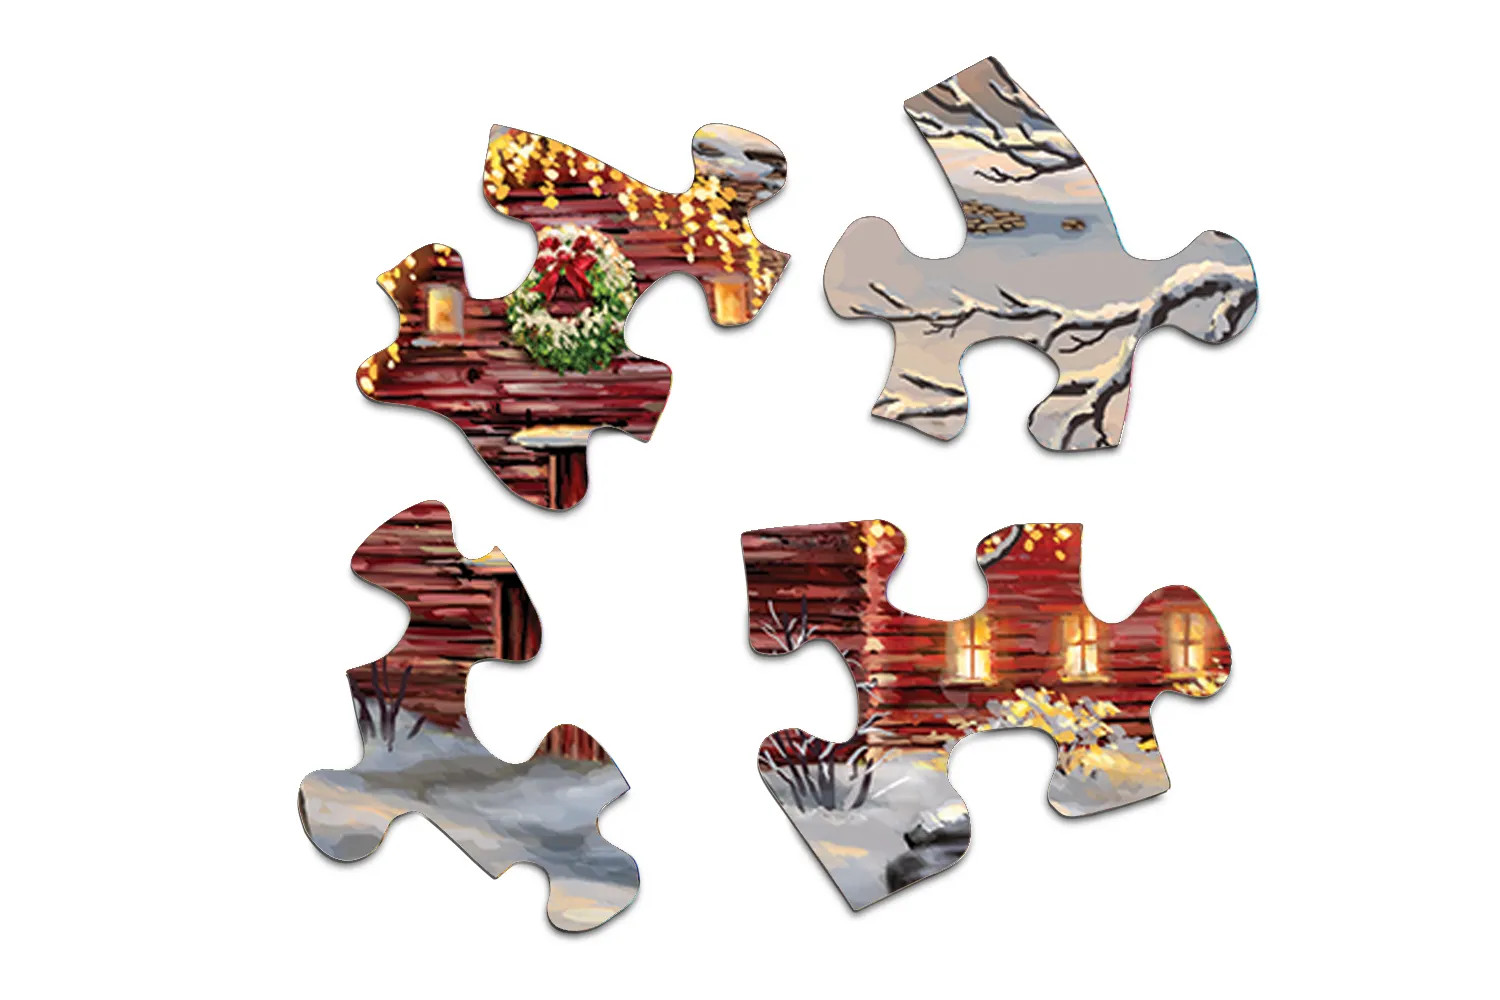 ACOTAR 3 x 500 Piece Jigsaw Puzzle Bundle